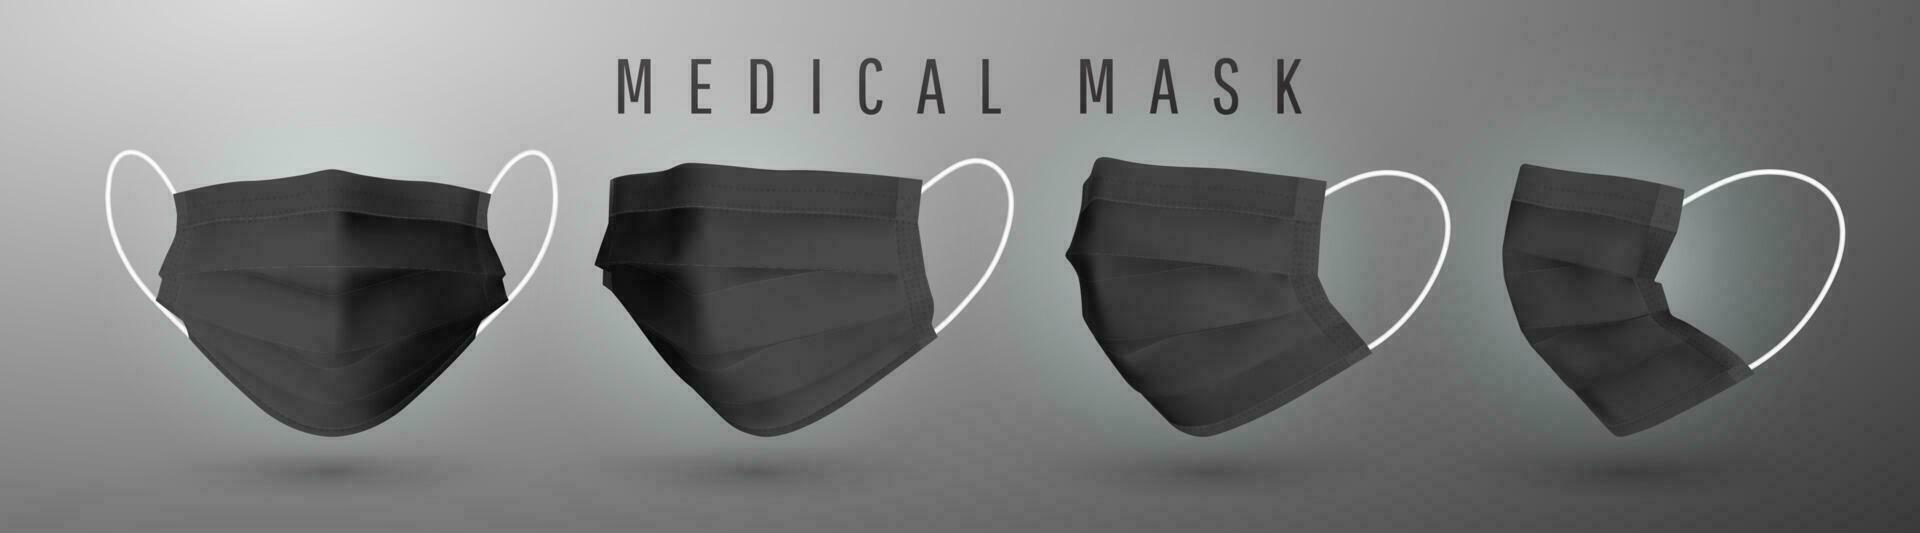 realistisk medicinsk ansikte mask. detaljer 3d medicinsk mask. vektor illustration